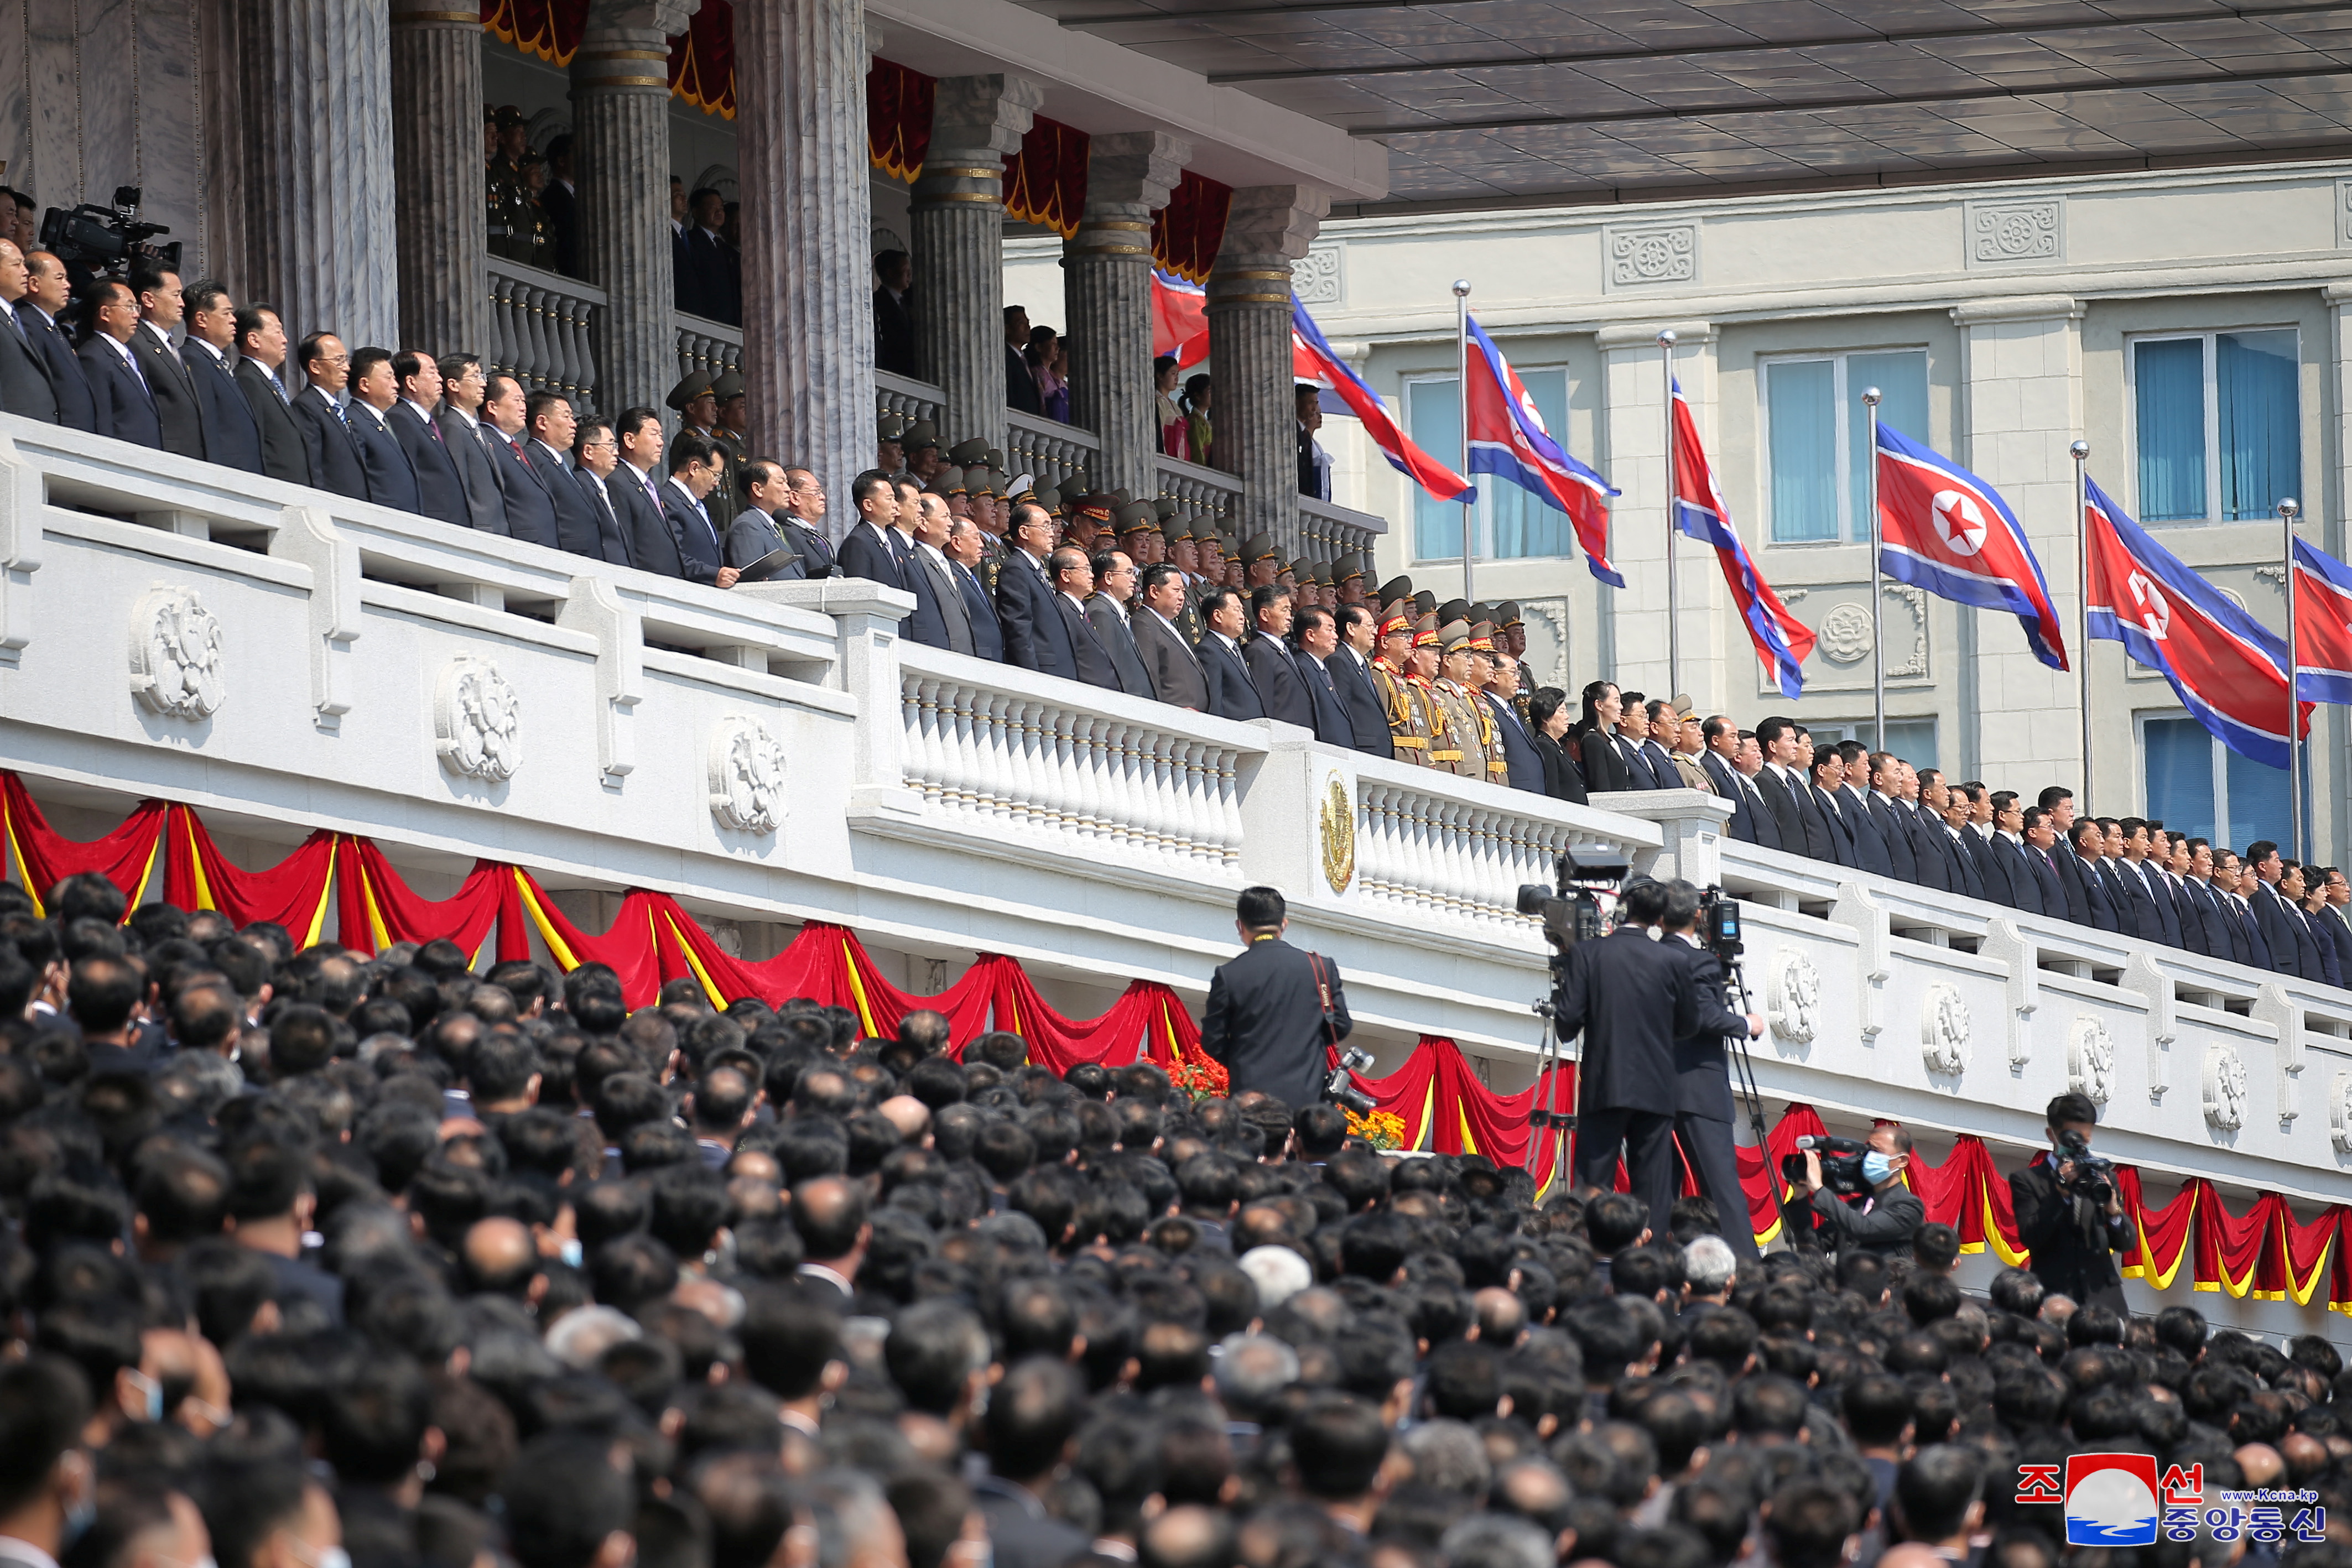 Pyongyang, Corea del Norte, el 15 de abril de 2022. Imagen tomada el 15 de abril de 2022 por la Agencia Central de Noticias de Corea del Norte (KCNA). KCNA vía REUTERS